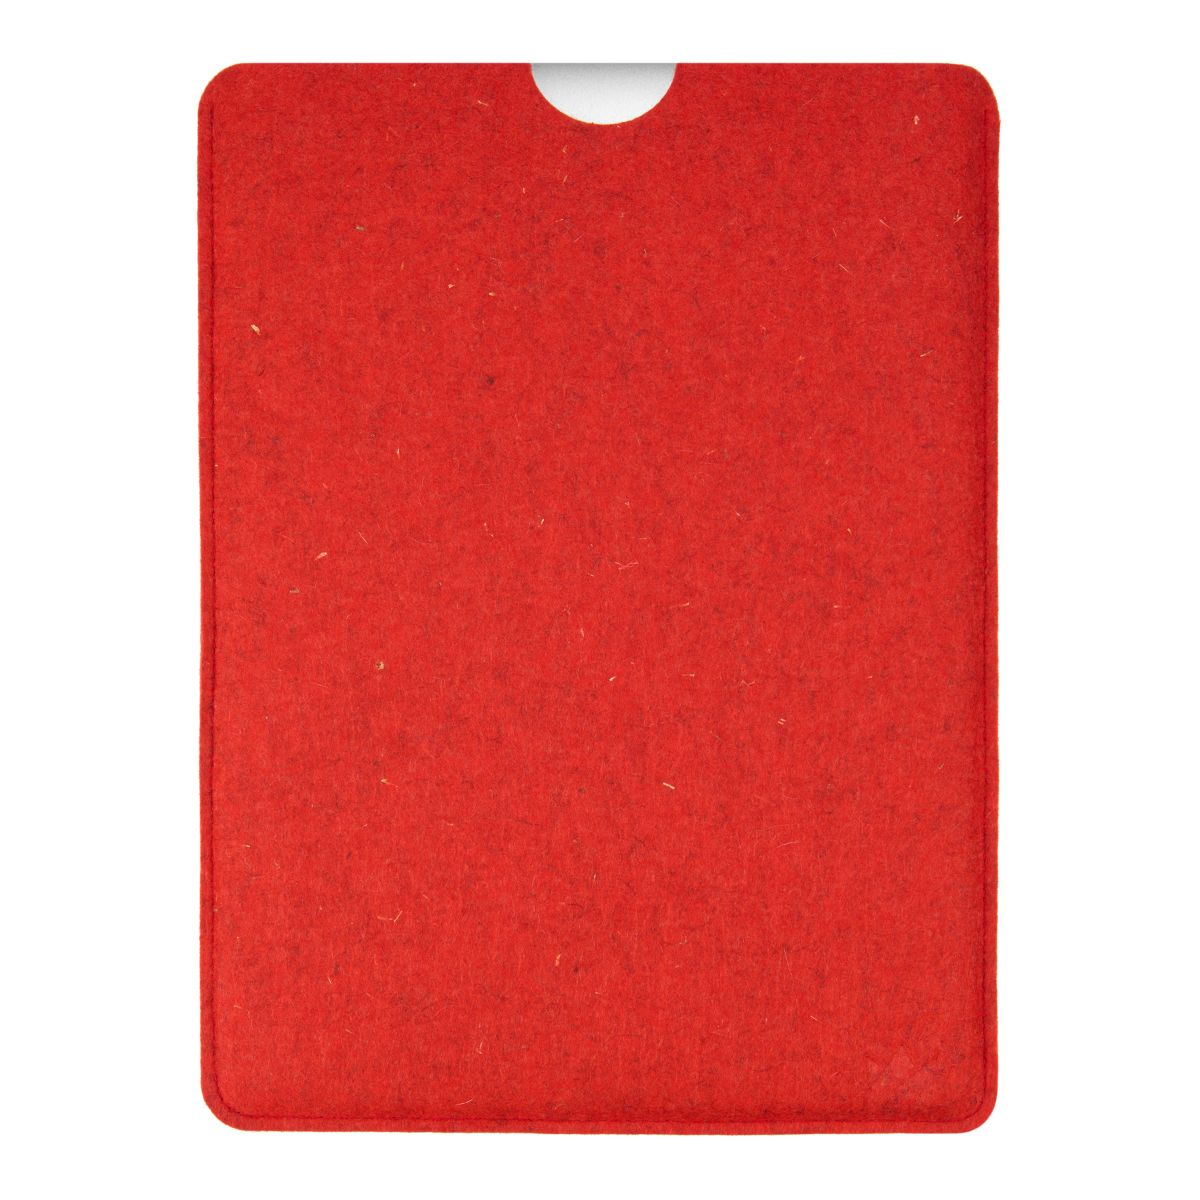 Sleeve (100% COVERKINGZ für Filz Laptop Tasche Notebook Apple rot Schurwolle),